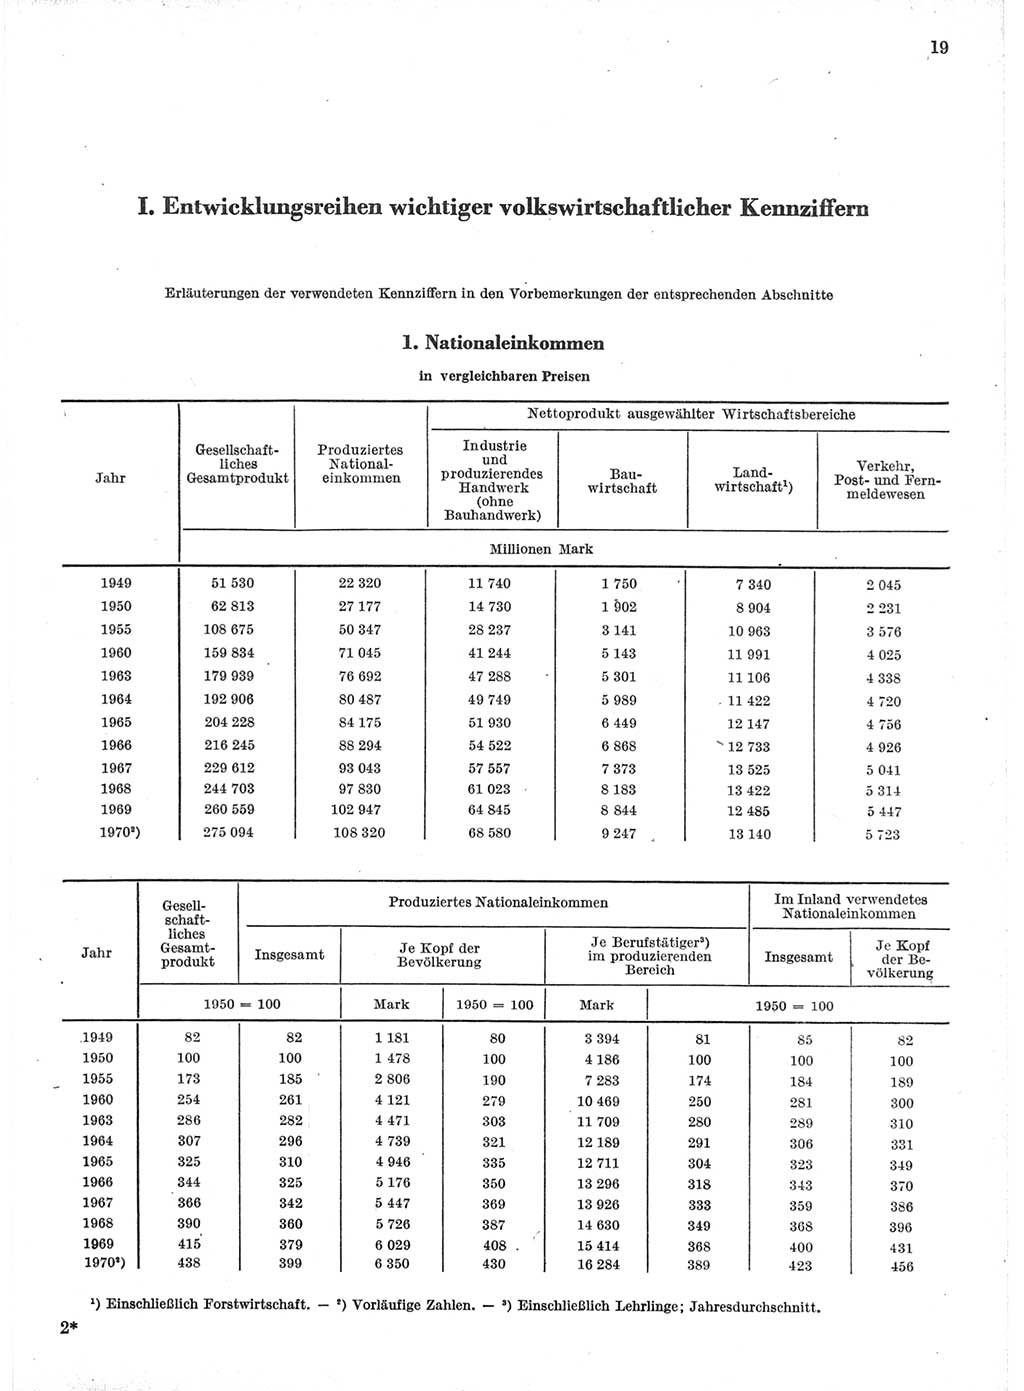 Statistisches Jahrbuch der Deutschen Demokratischen Republik (DDR) 1971, Seite 19 (Stat. Jb. DDR 1971, S. 19)